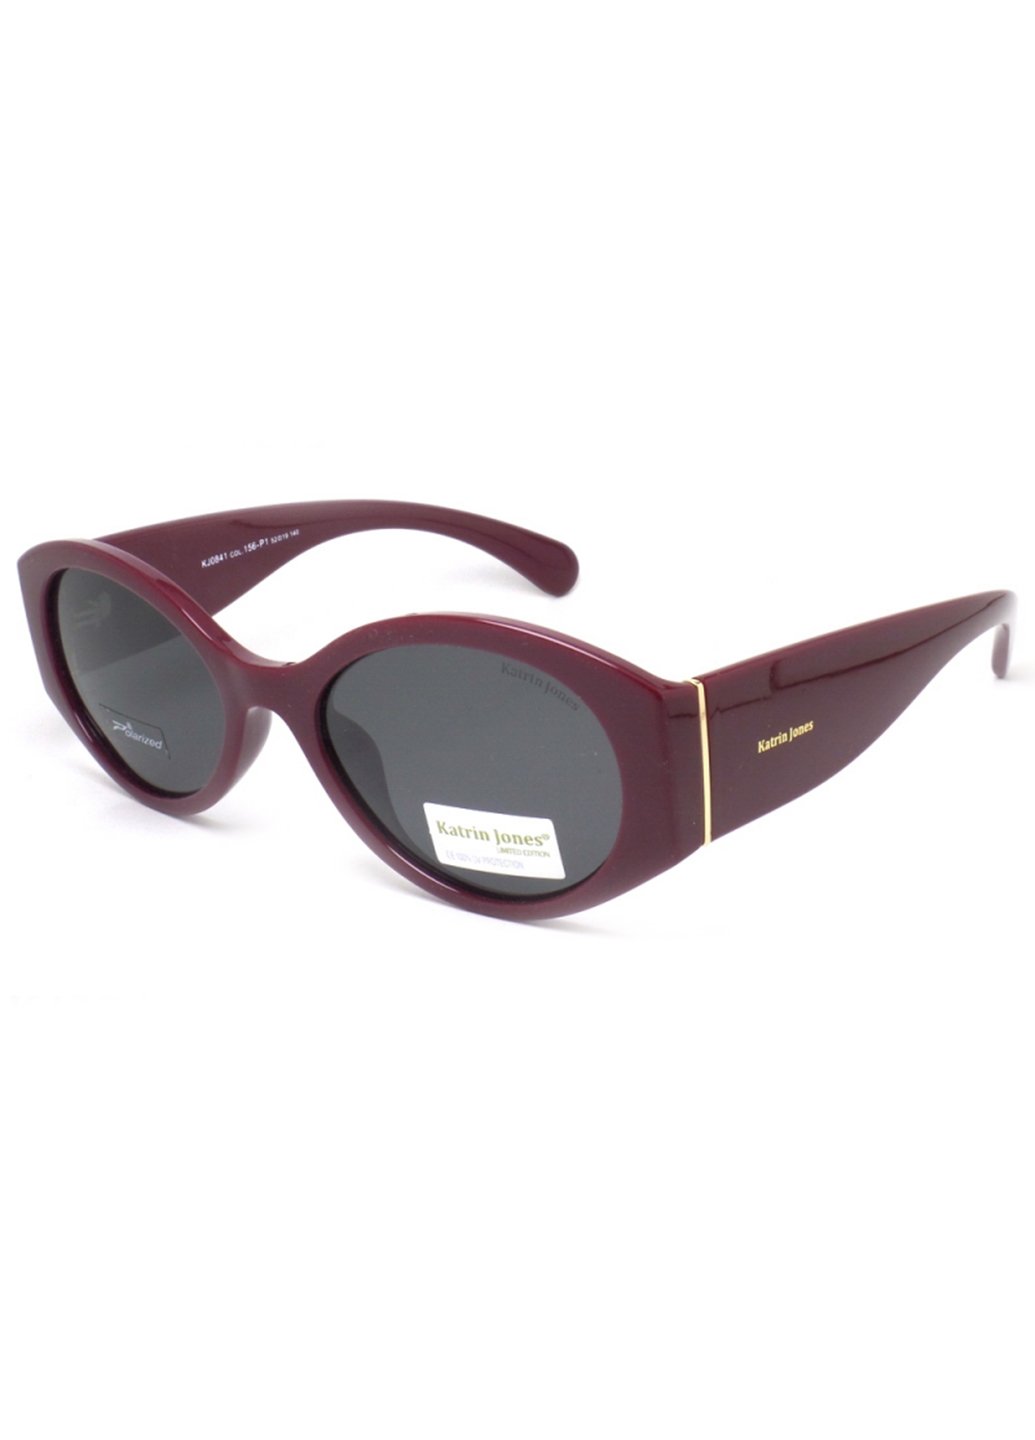 Купить Женские солнцезащитные очки Katrin Jones с поляризацией KJ0841 180023 - Черный в интернет-магазине